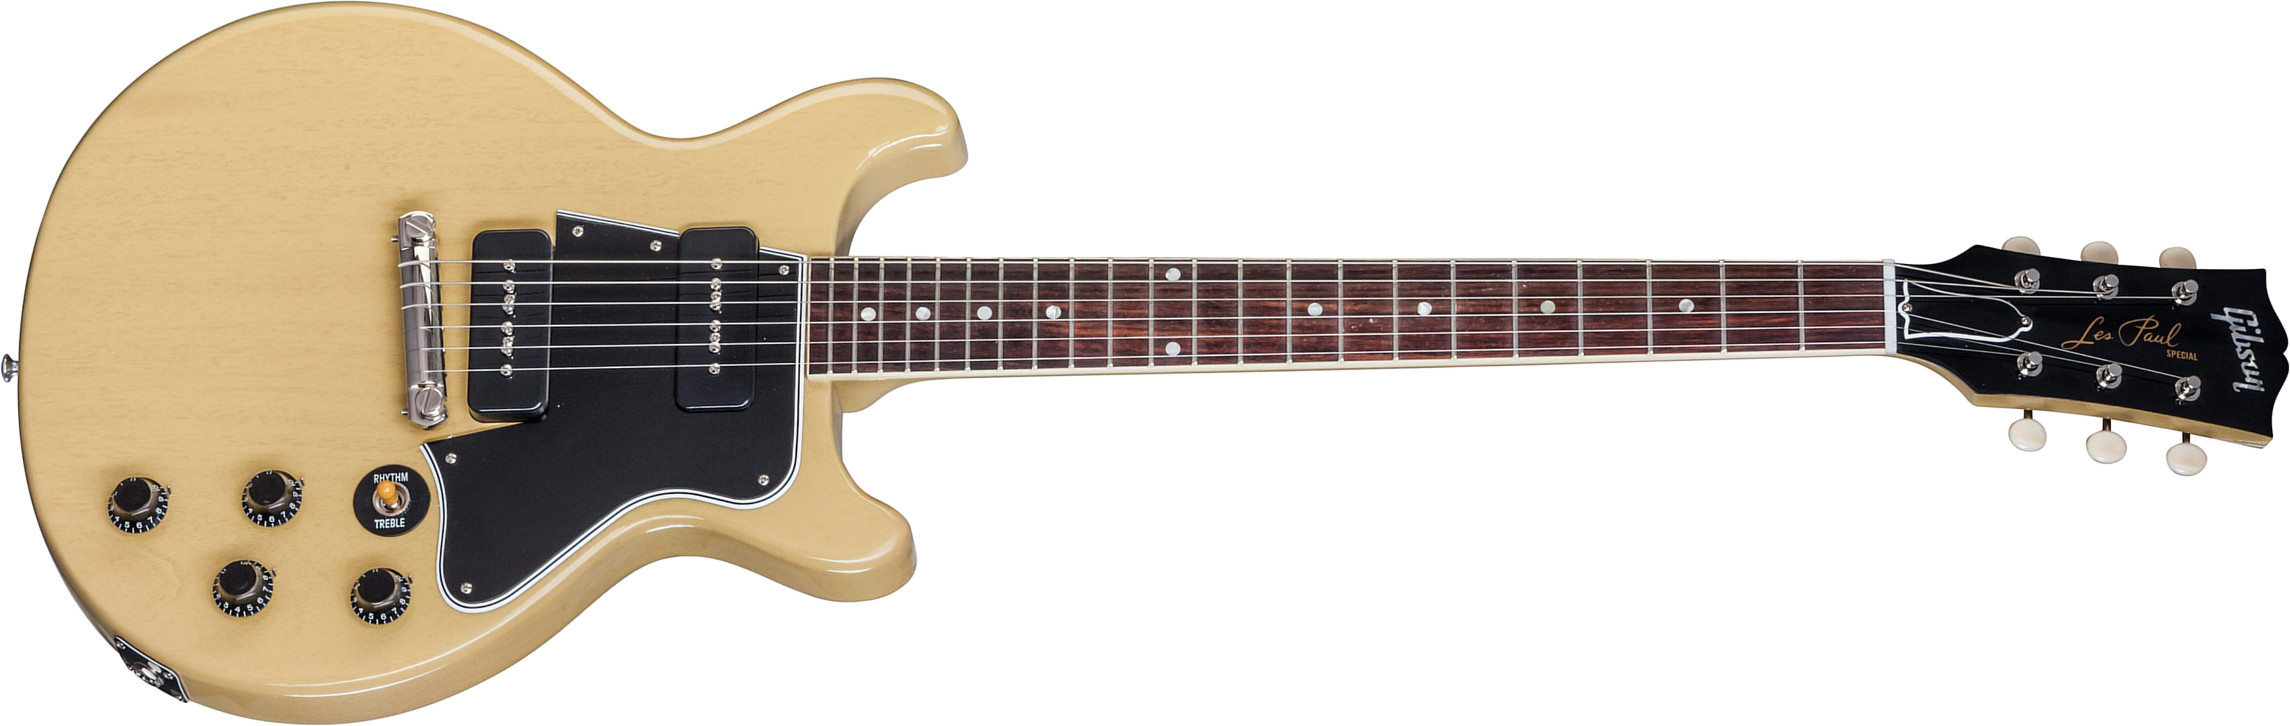 Gibson Custom Shop Les Paul Special Double Cut 2p90 Ht Rw - Tv Yellow - Guitarra eléctrica de doble corte. - Main picture